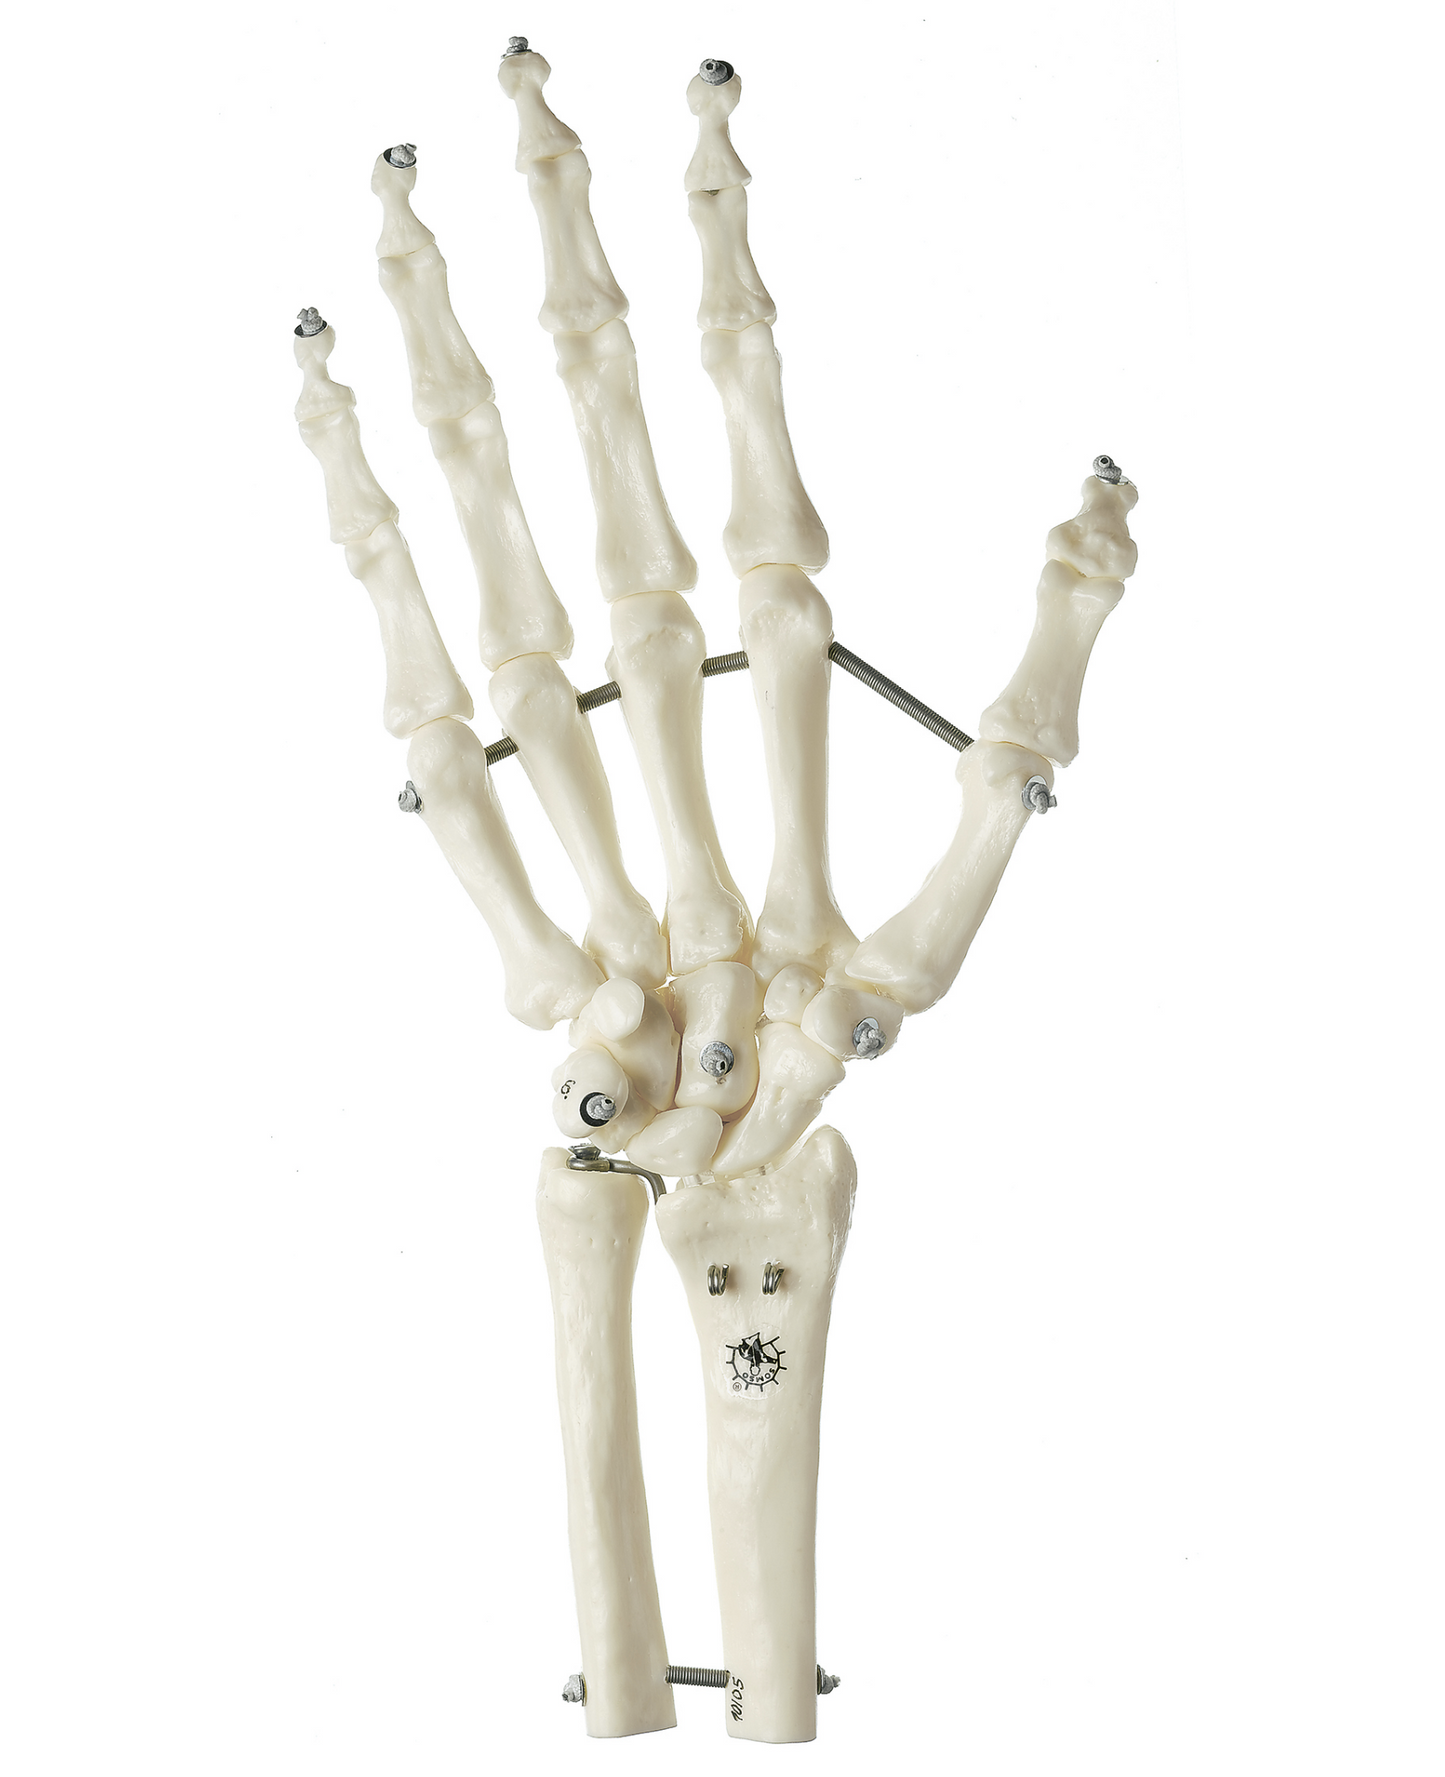 SOMSO skeletmodel af hånd med del af underarmsknoglerne monteret på elastikker